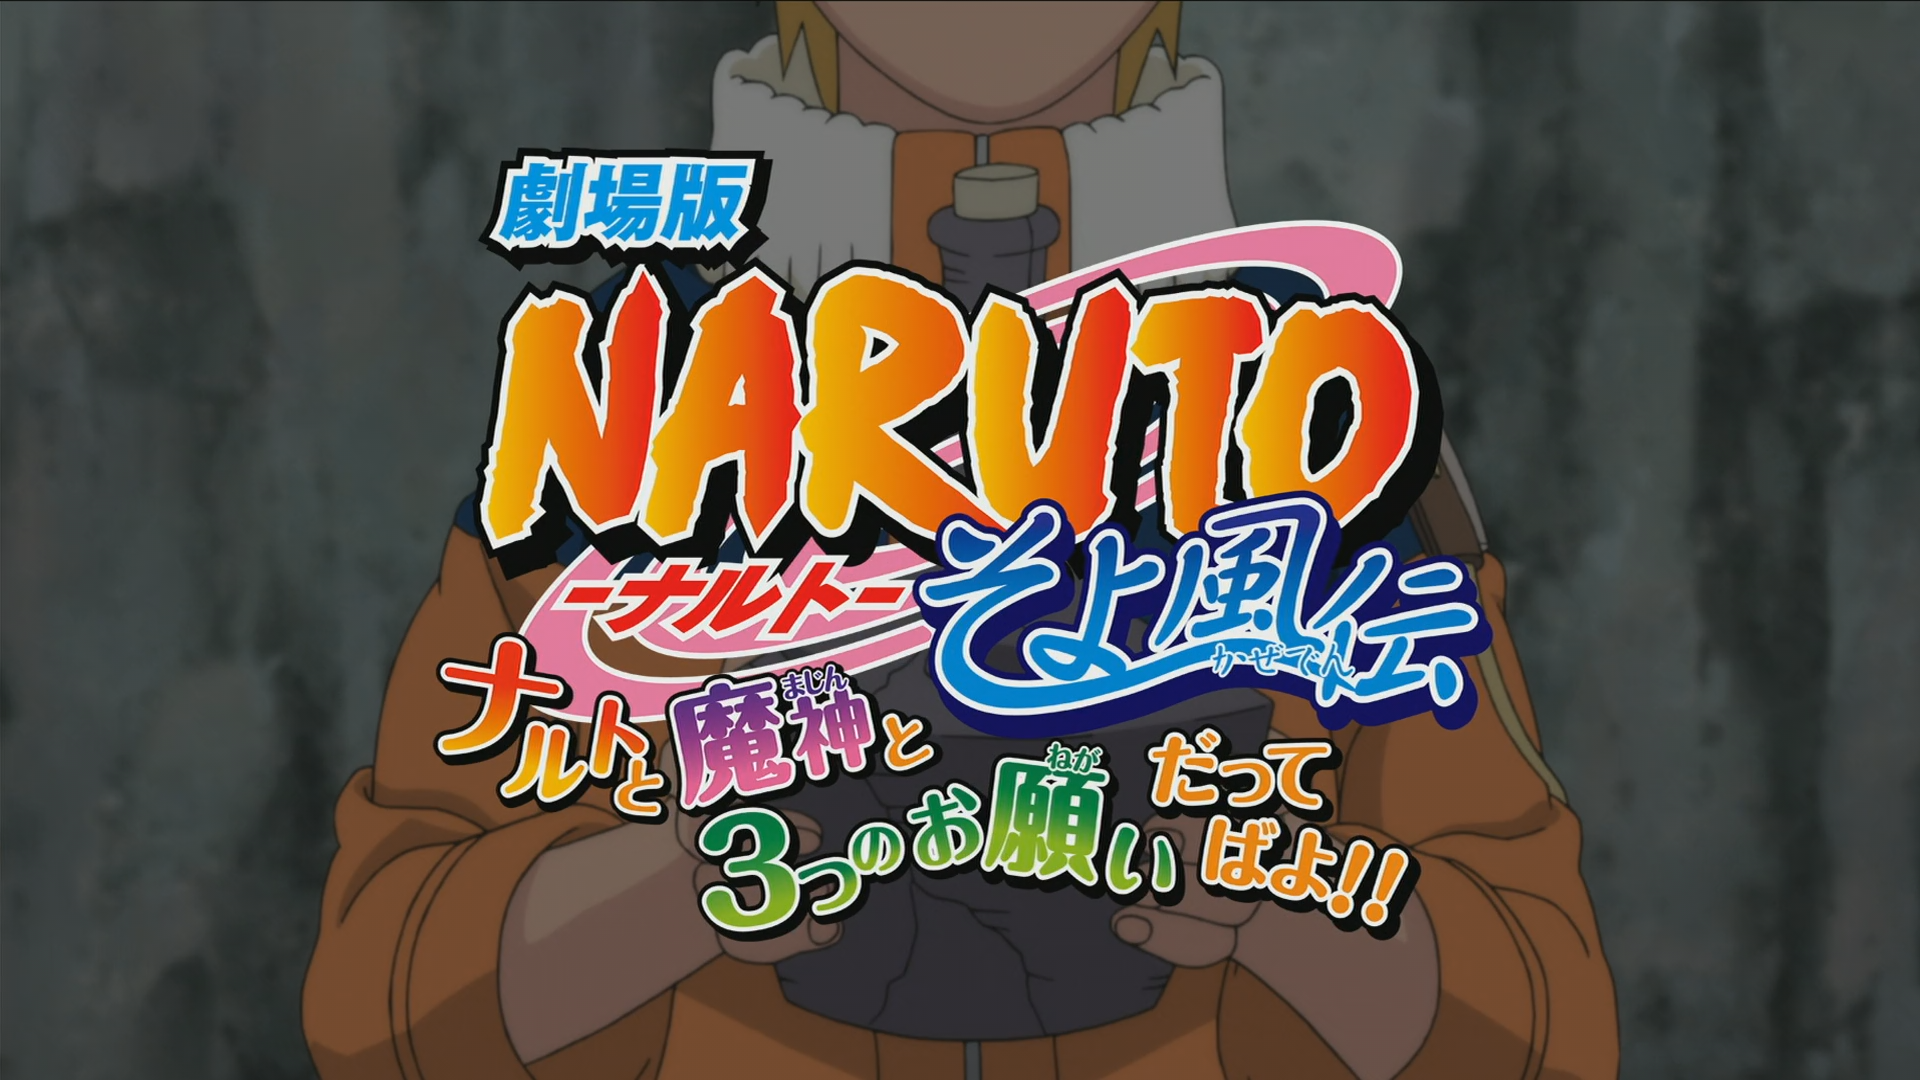 Gênio Quiz Naruto  Genio quiz, Naruto, Naruto e sasuke